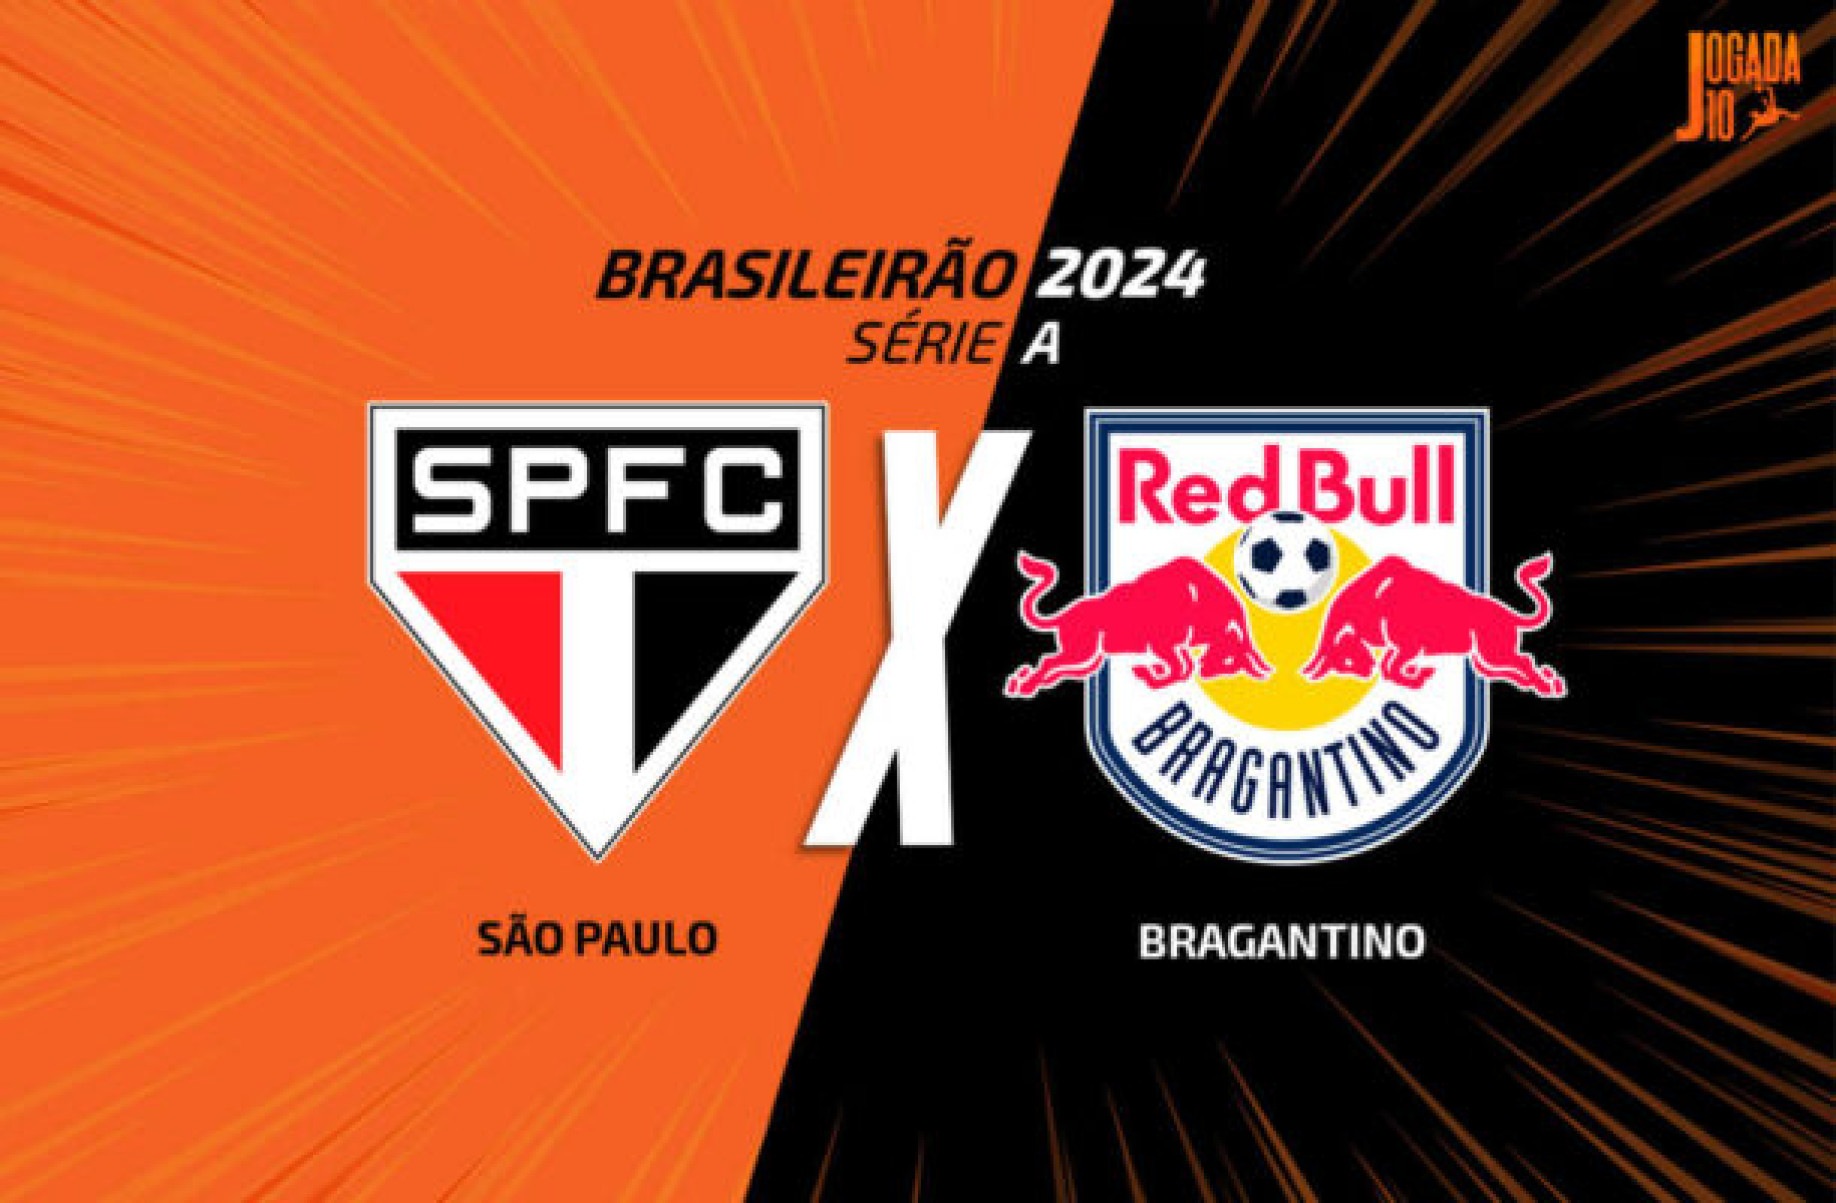 São Paulo x Bragantino, AO VIVO, com a Voz do Esporte, às 18h30